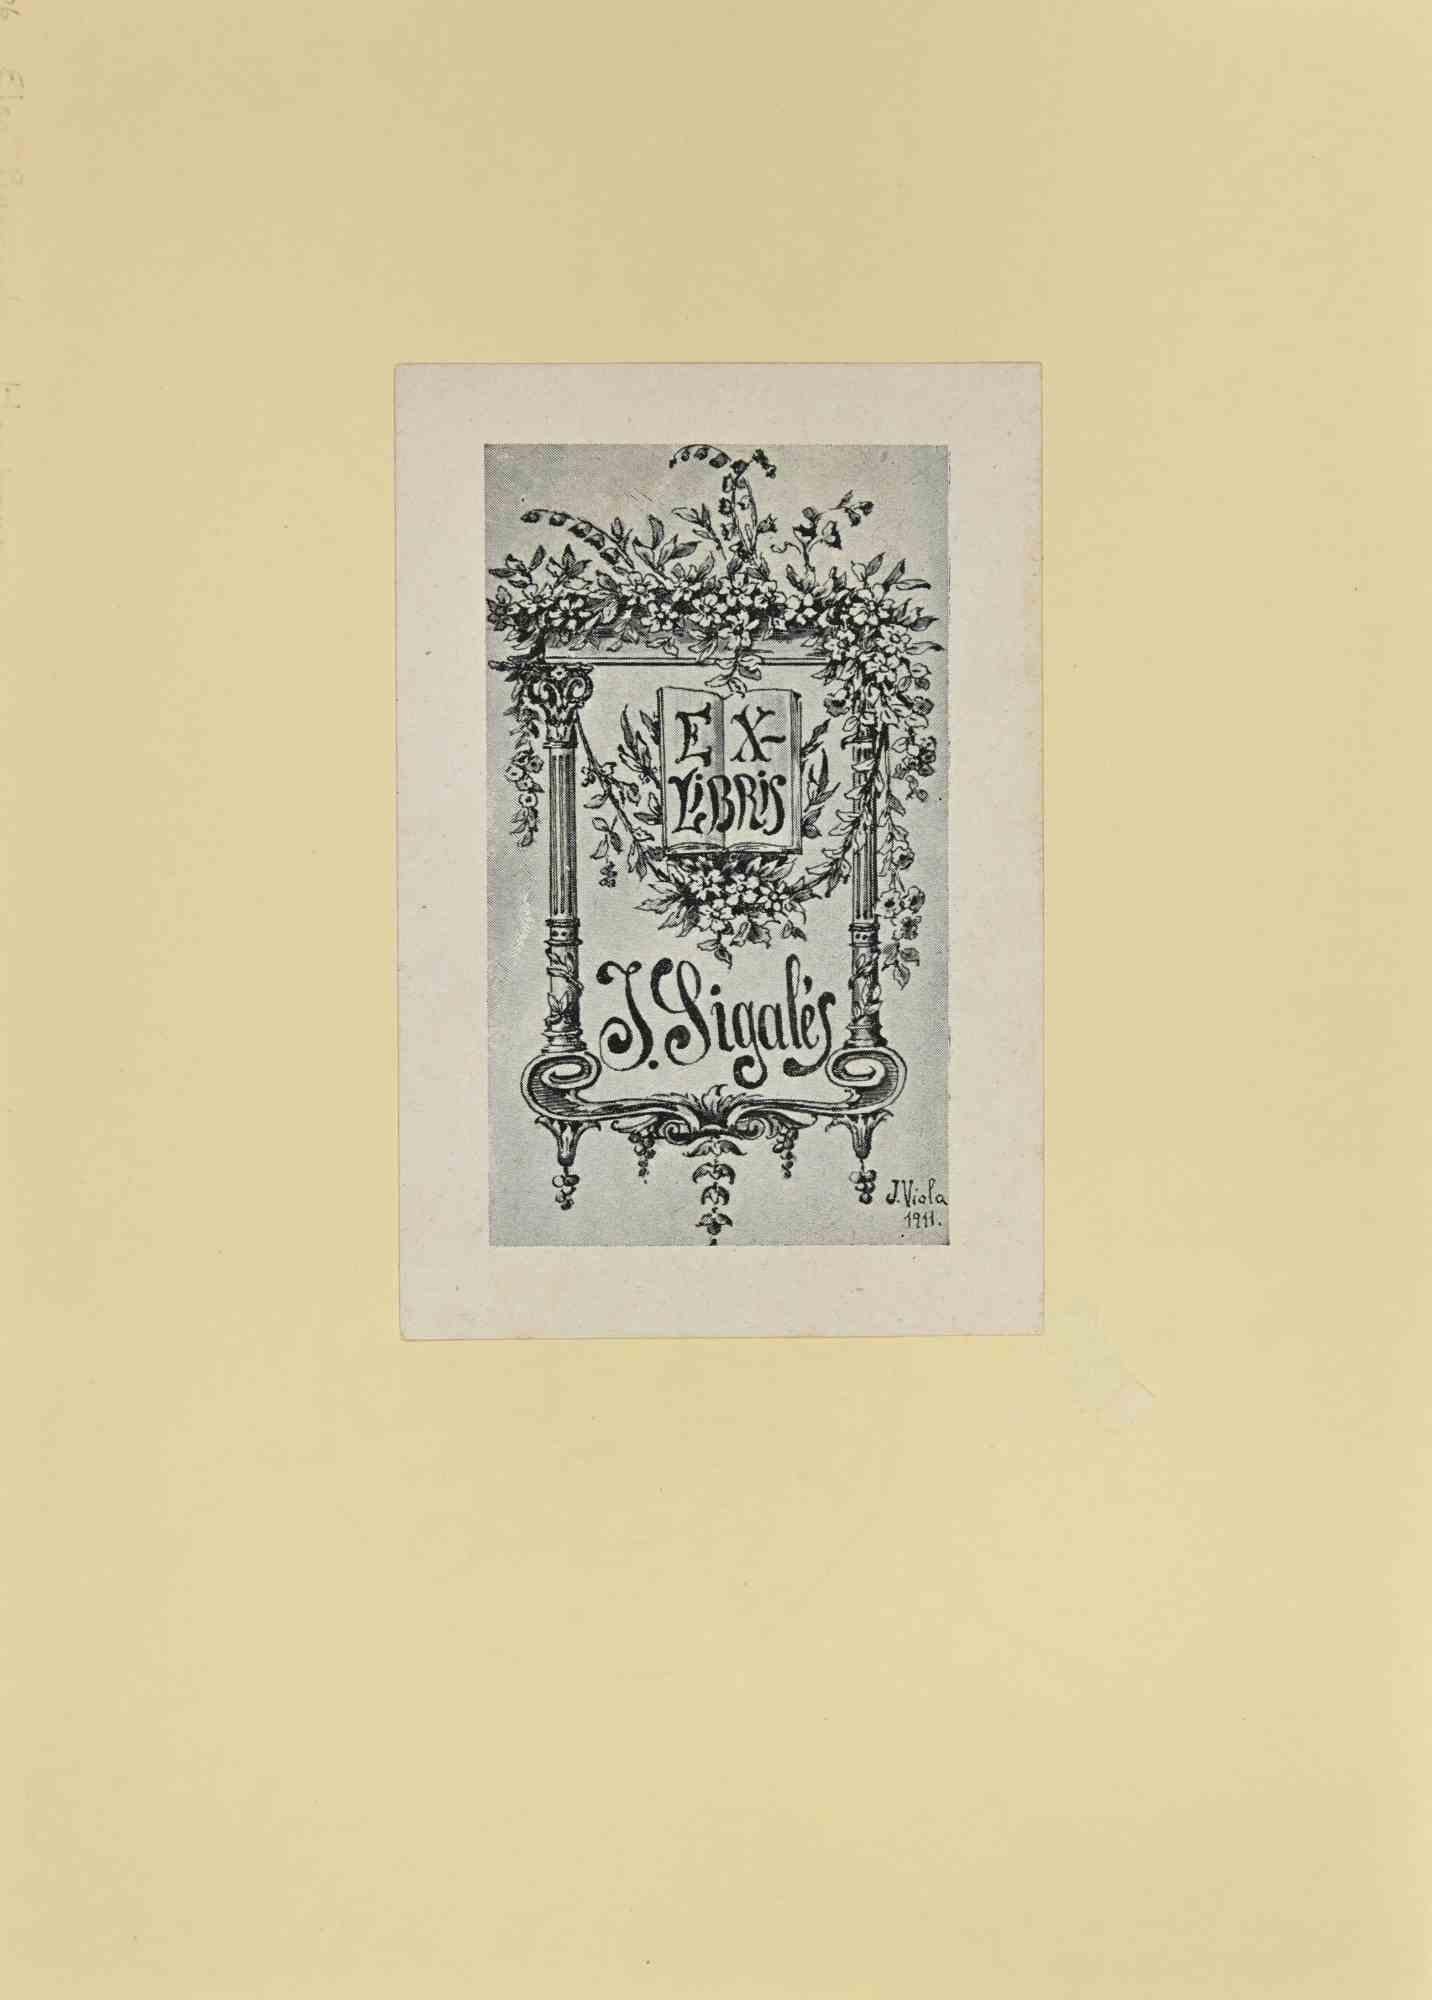 Ex Libris - J. Sigale's ist ein modernes Kunstwerk in 1911 s. von José (Josepe) Viola realisiert.
 
Ex Libris. S/W-Holzschnitt auf Papier. 
 
Das Werk ist auf elfenbeinfarbenen Karton geklebt. Signiert auf der Platte und datiert am rechten Rand
